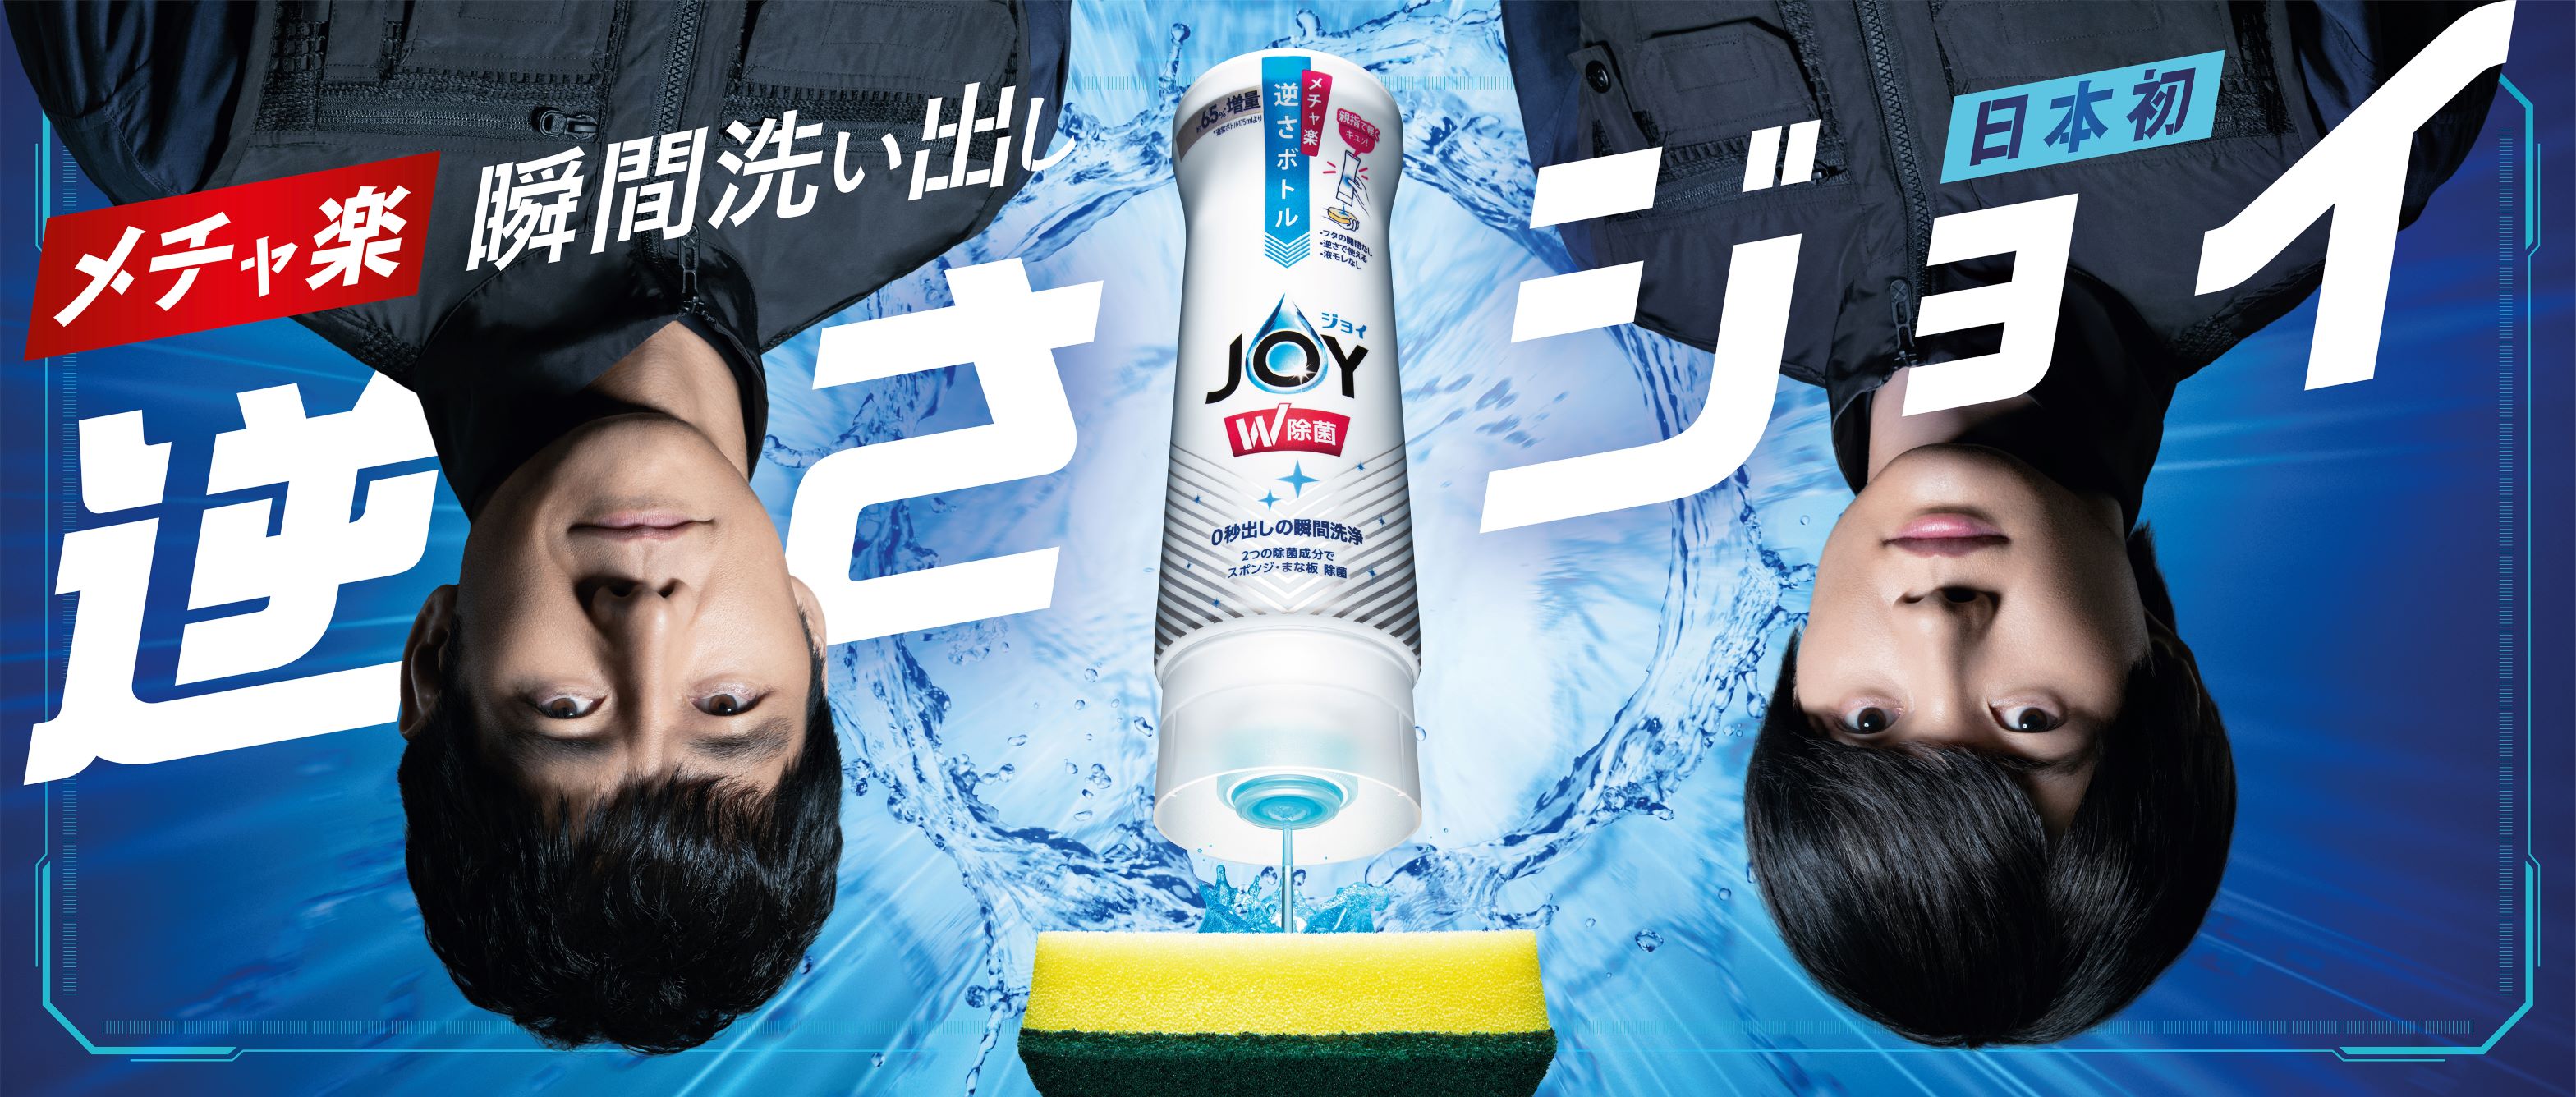 台所用洗剤『ジョイ』から発売される日本初の「メチャ楽 逆さボトル